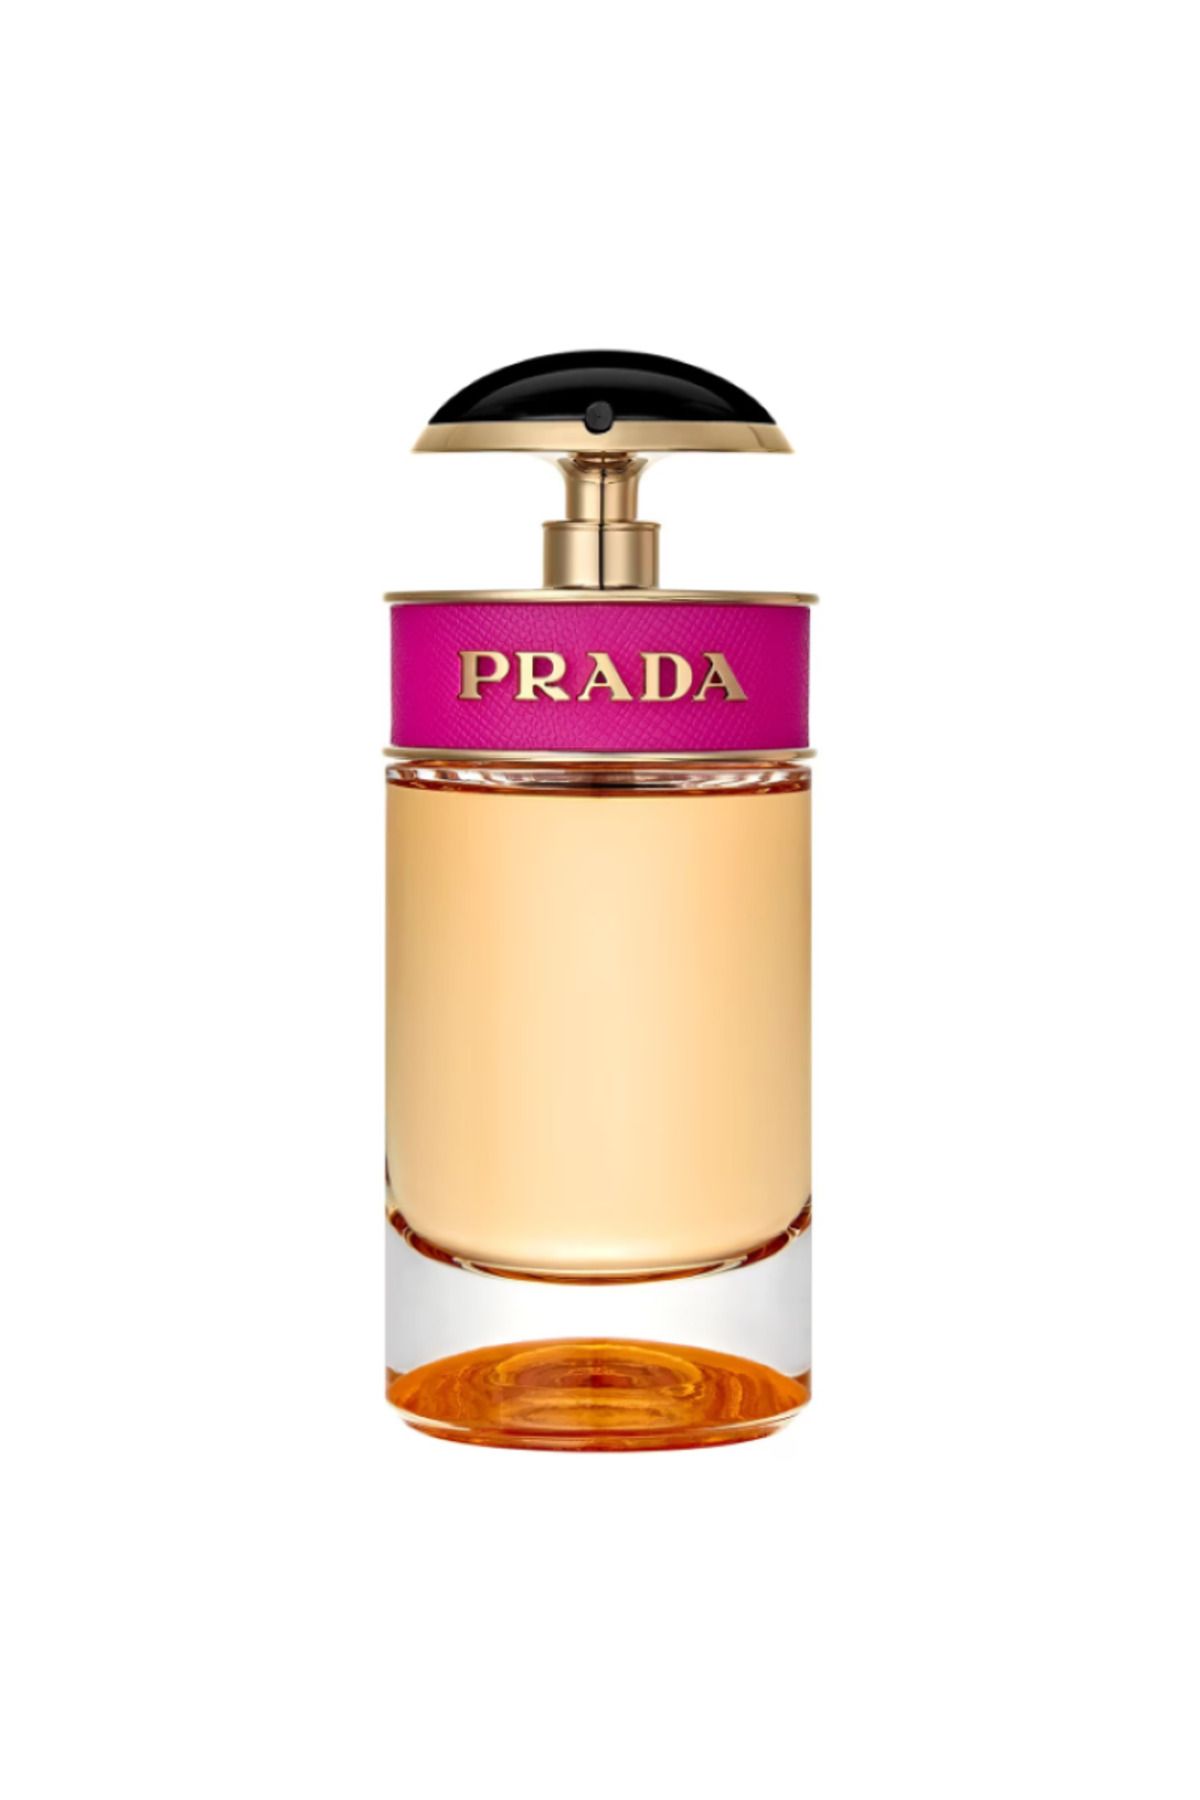 Prada Candy - Eau de Parfum Baştan Çıkarıcı, Arzulanan, Kışkırtıcı, Ateşli 50 ml